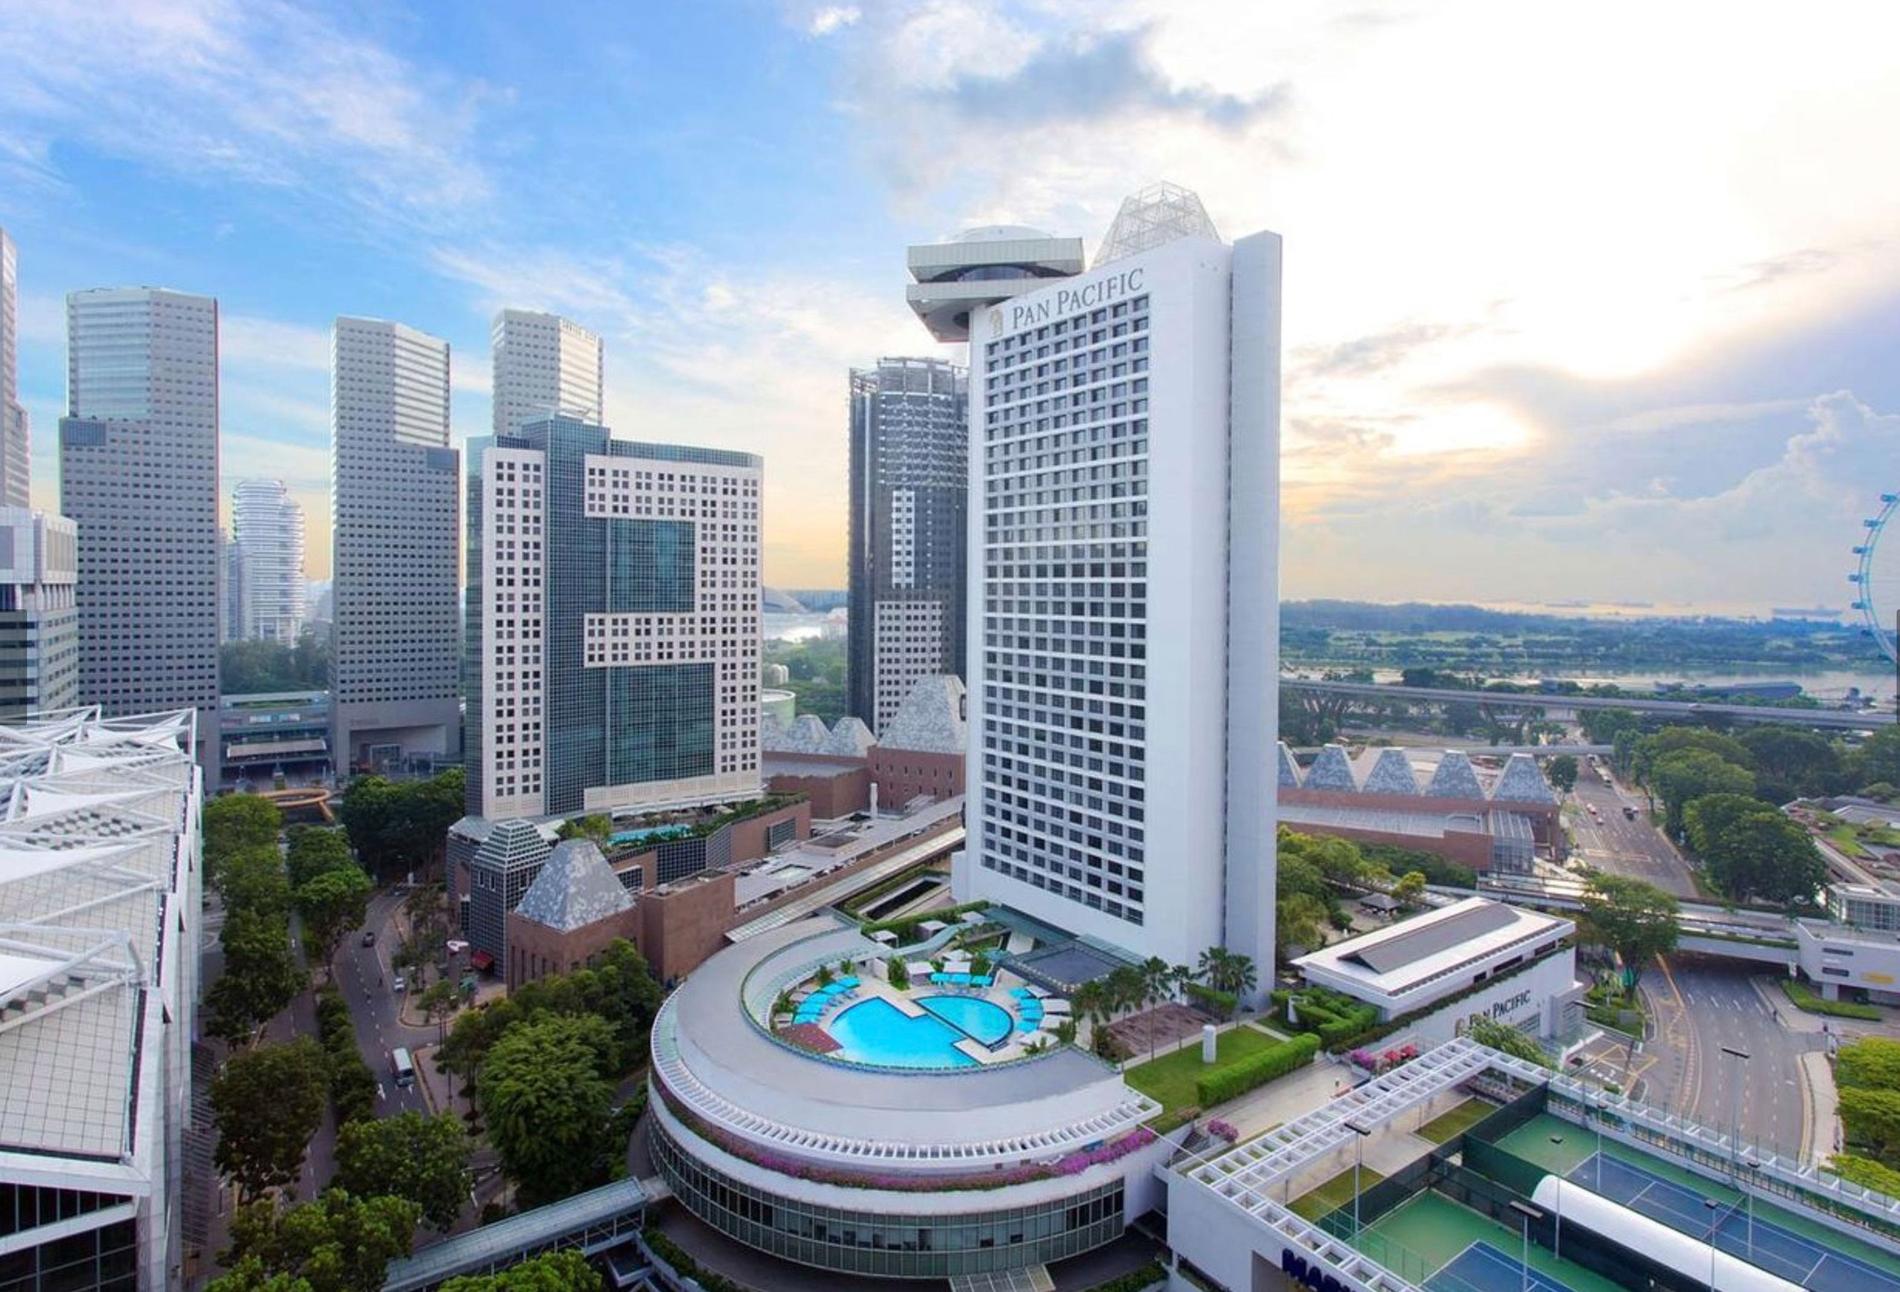 På det femstjärniga lyxhotellet Pan Pacific i Singapore bodde Patrick Reslow i en svit på 79 kvadratmeter. Enligt hotellet var det bokat för hela hans familj - men skattebetalarna stod för hela notan. 